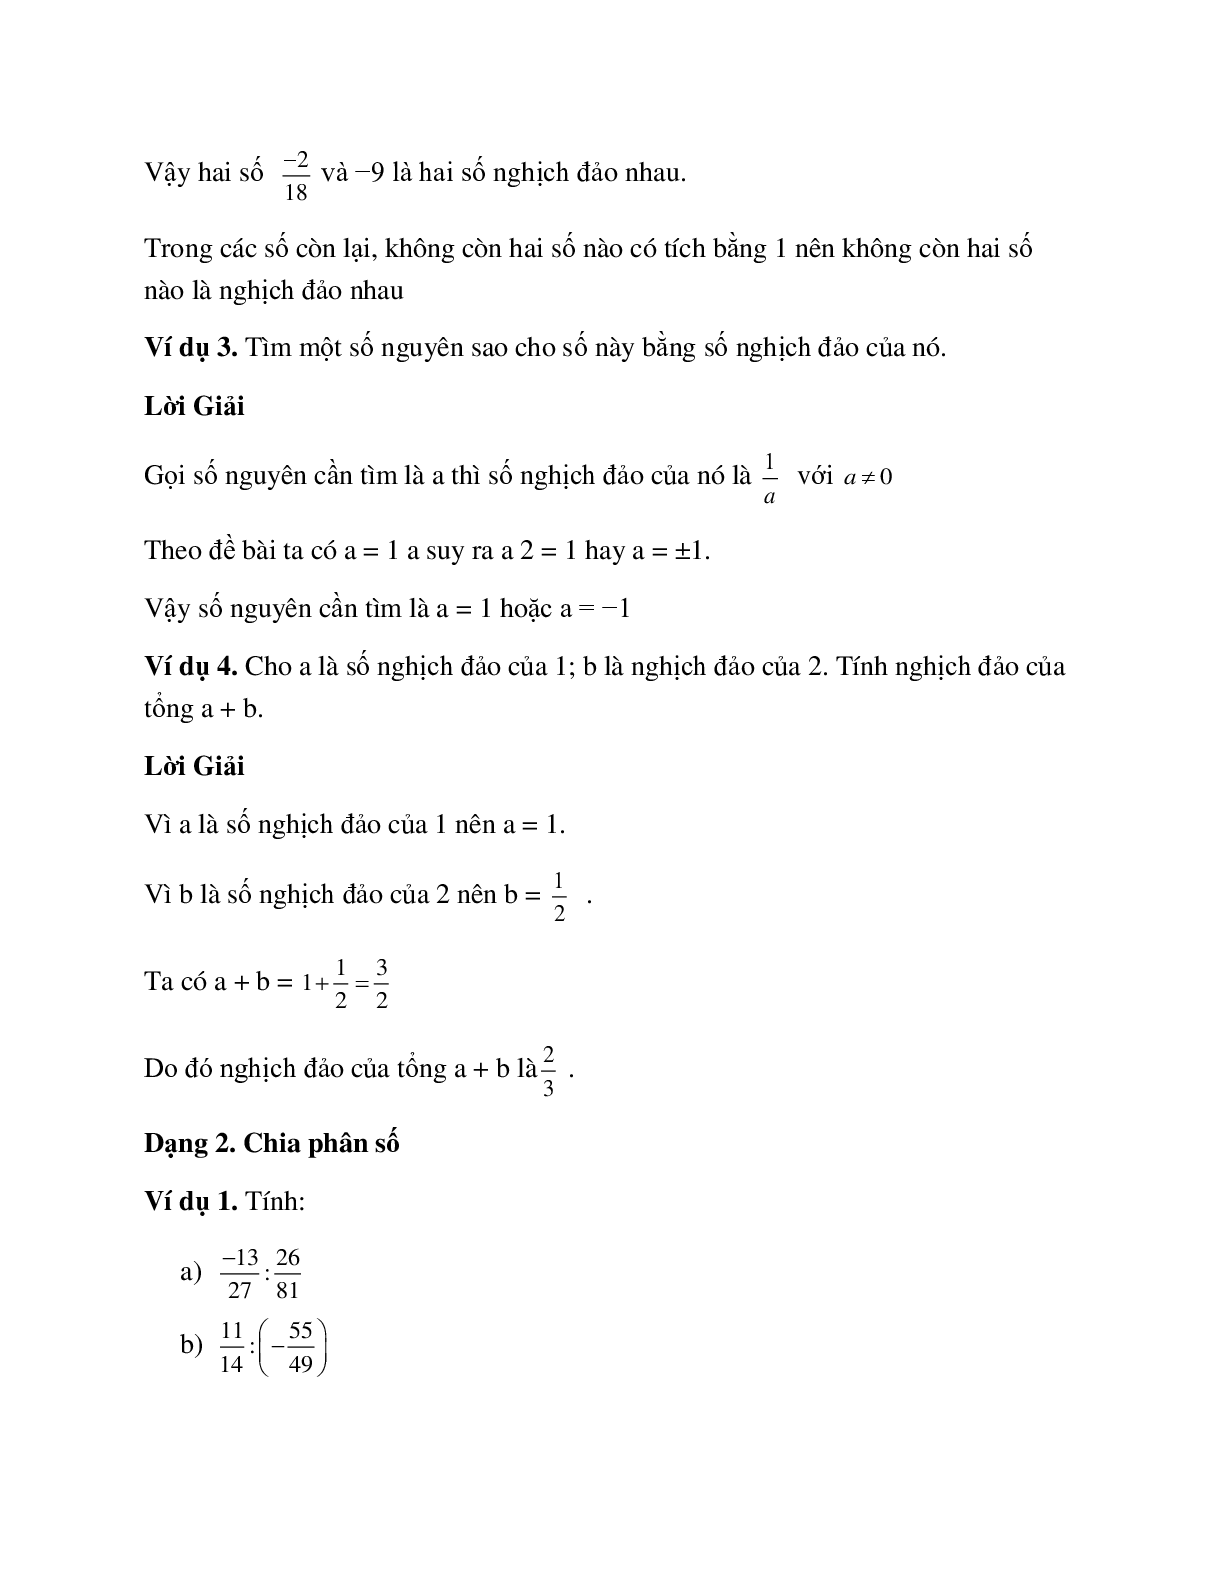 Hệ thống bài tập về phép chia hai phân số có lời giải (trang 2)